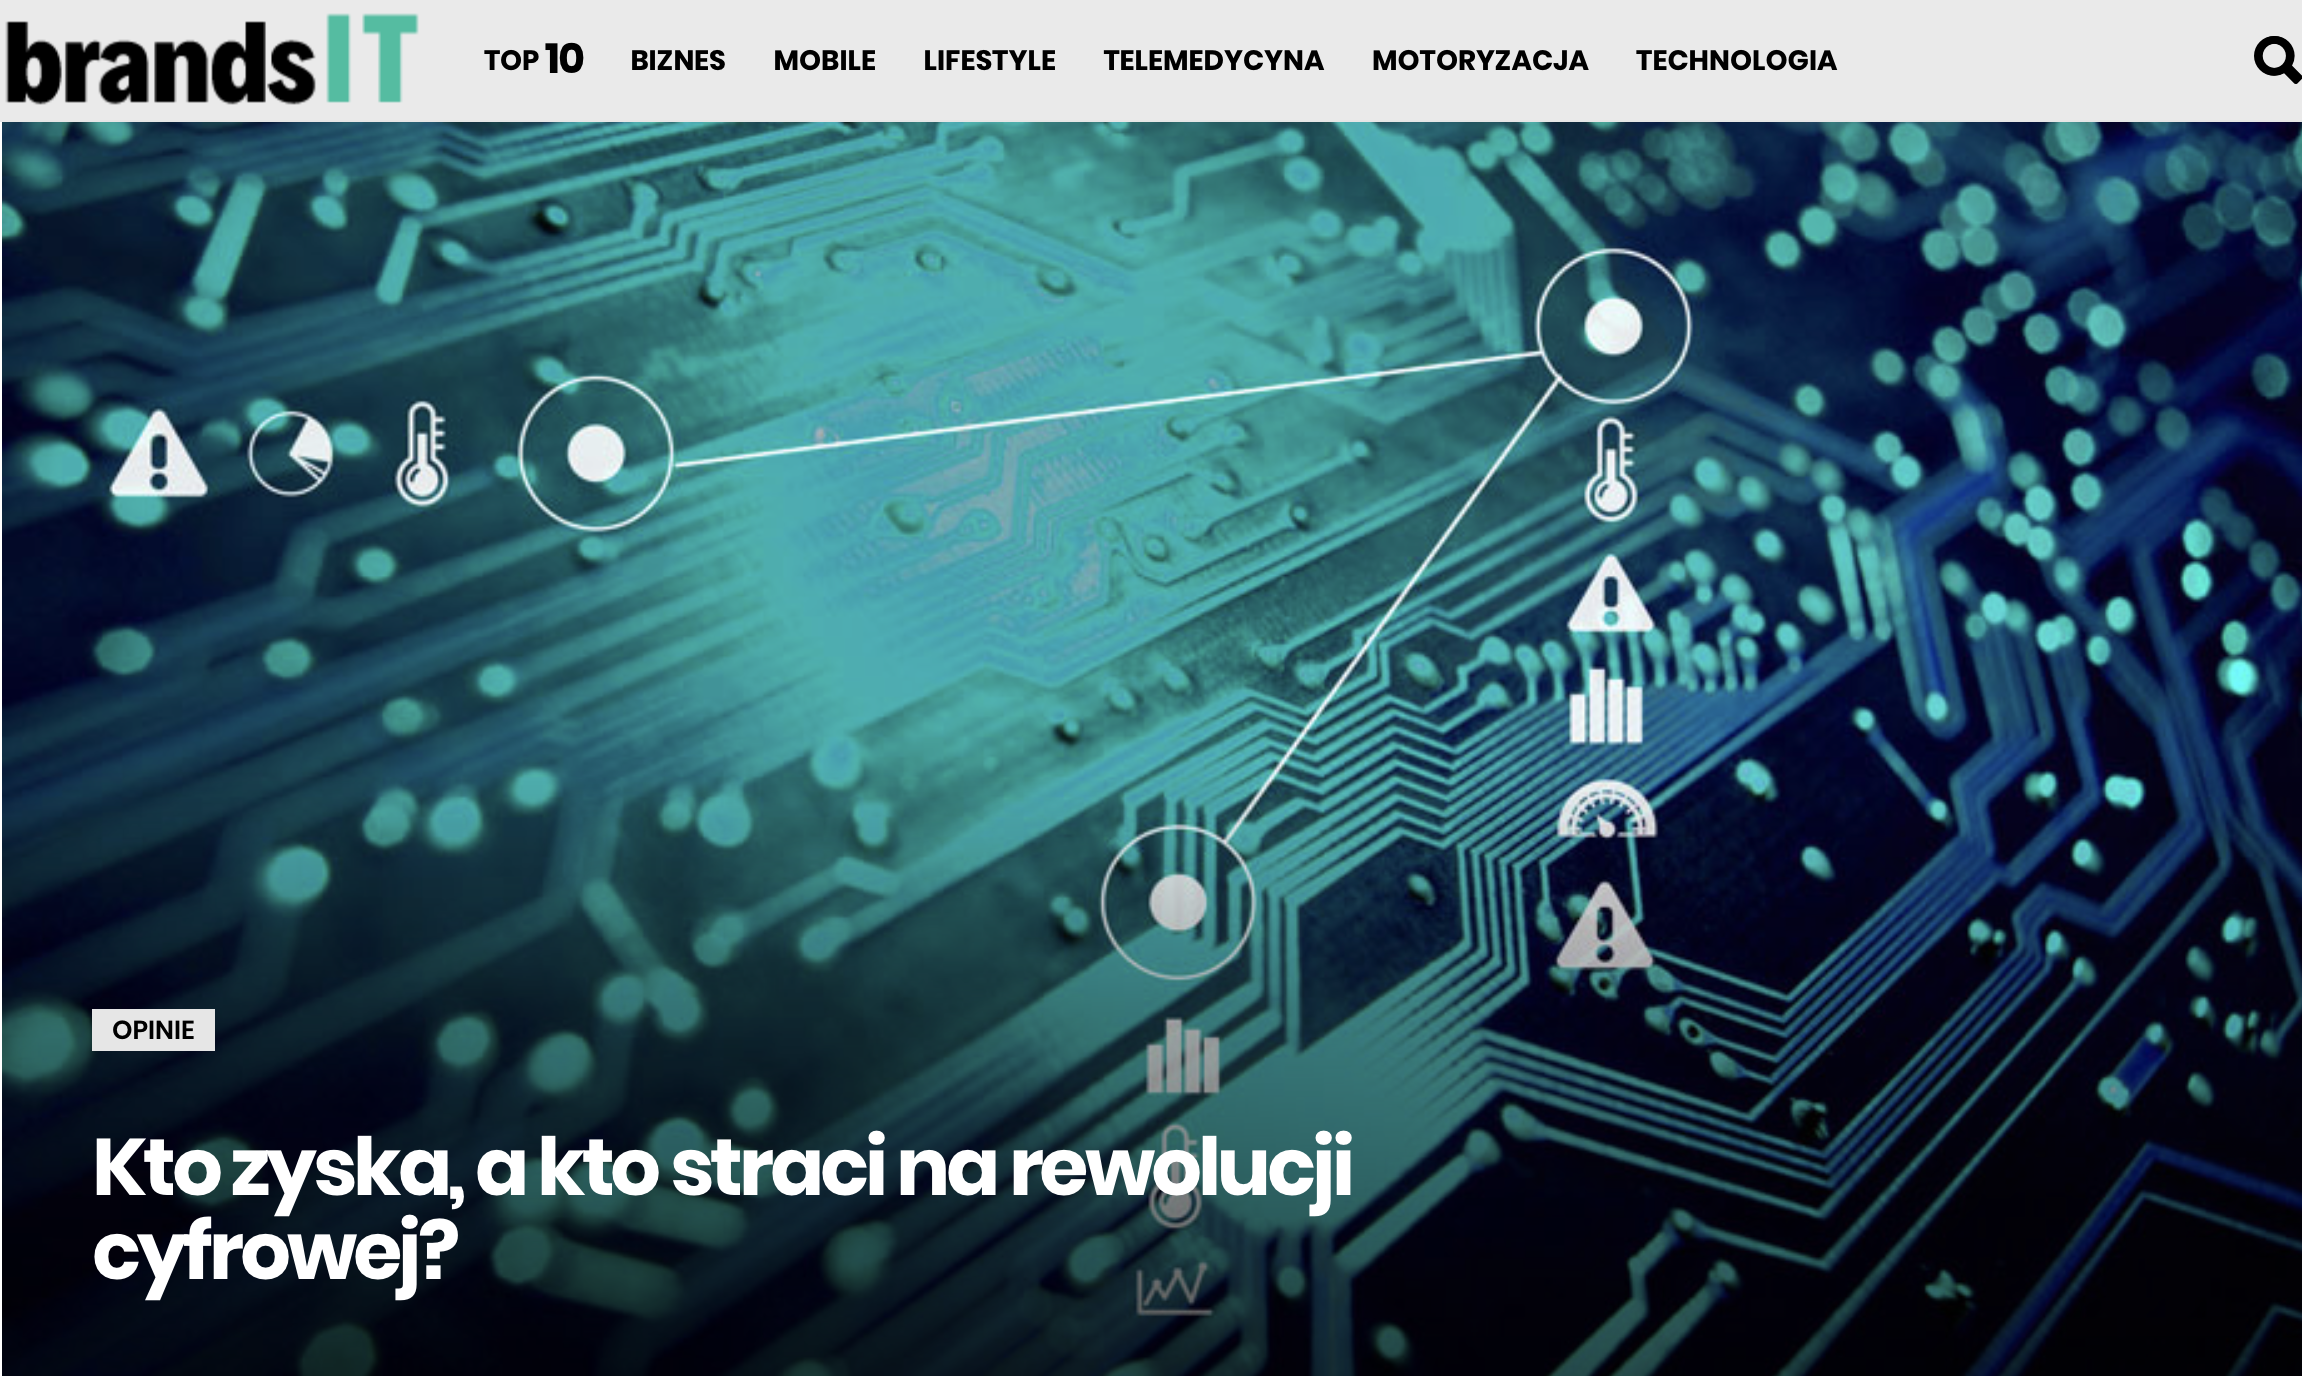 BrandsIT - Kto zyska, a kto straci na rewolucji cyfrowej Norbert Biedrzycki